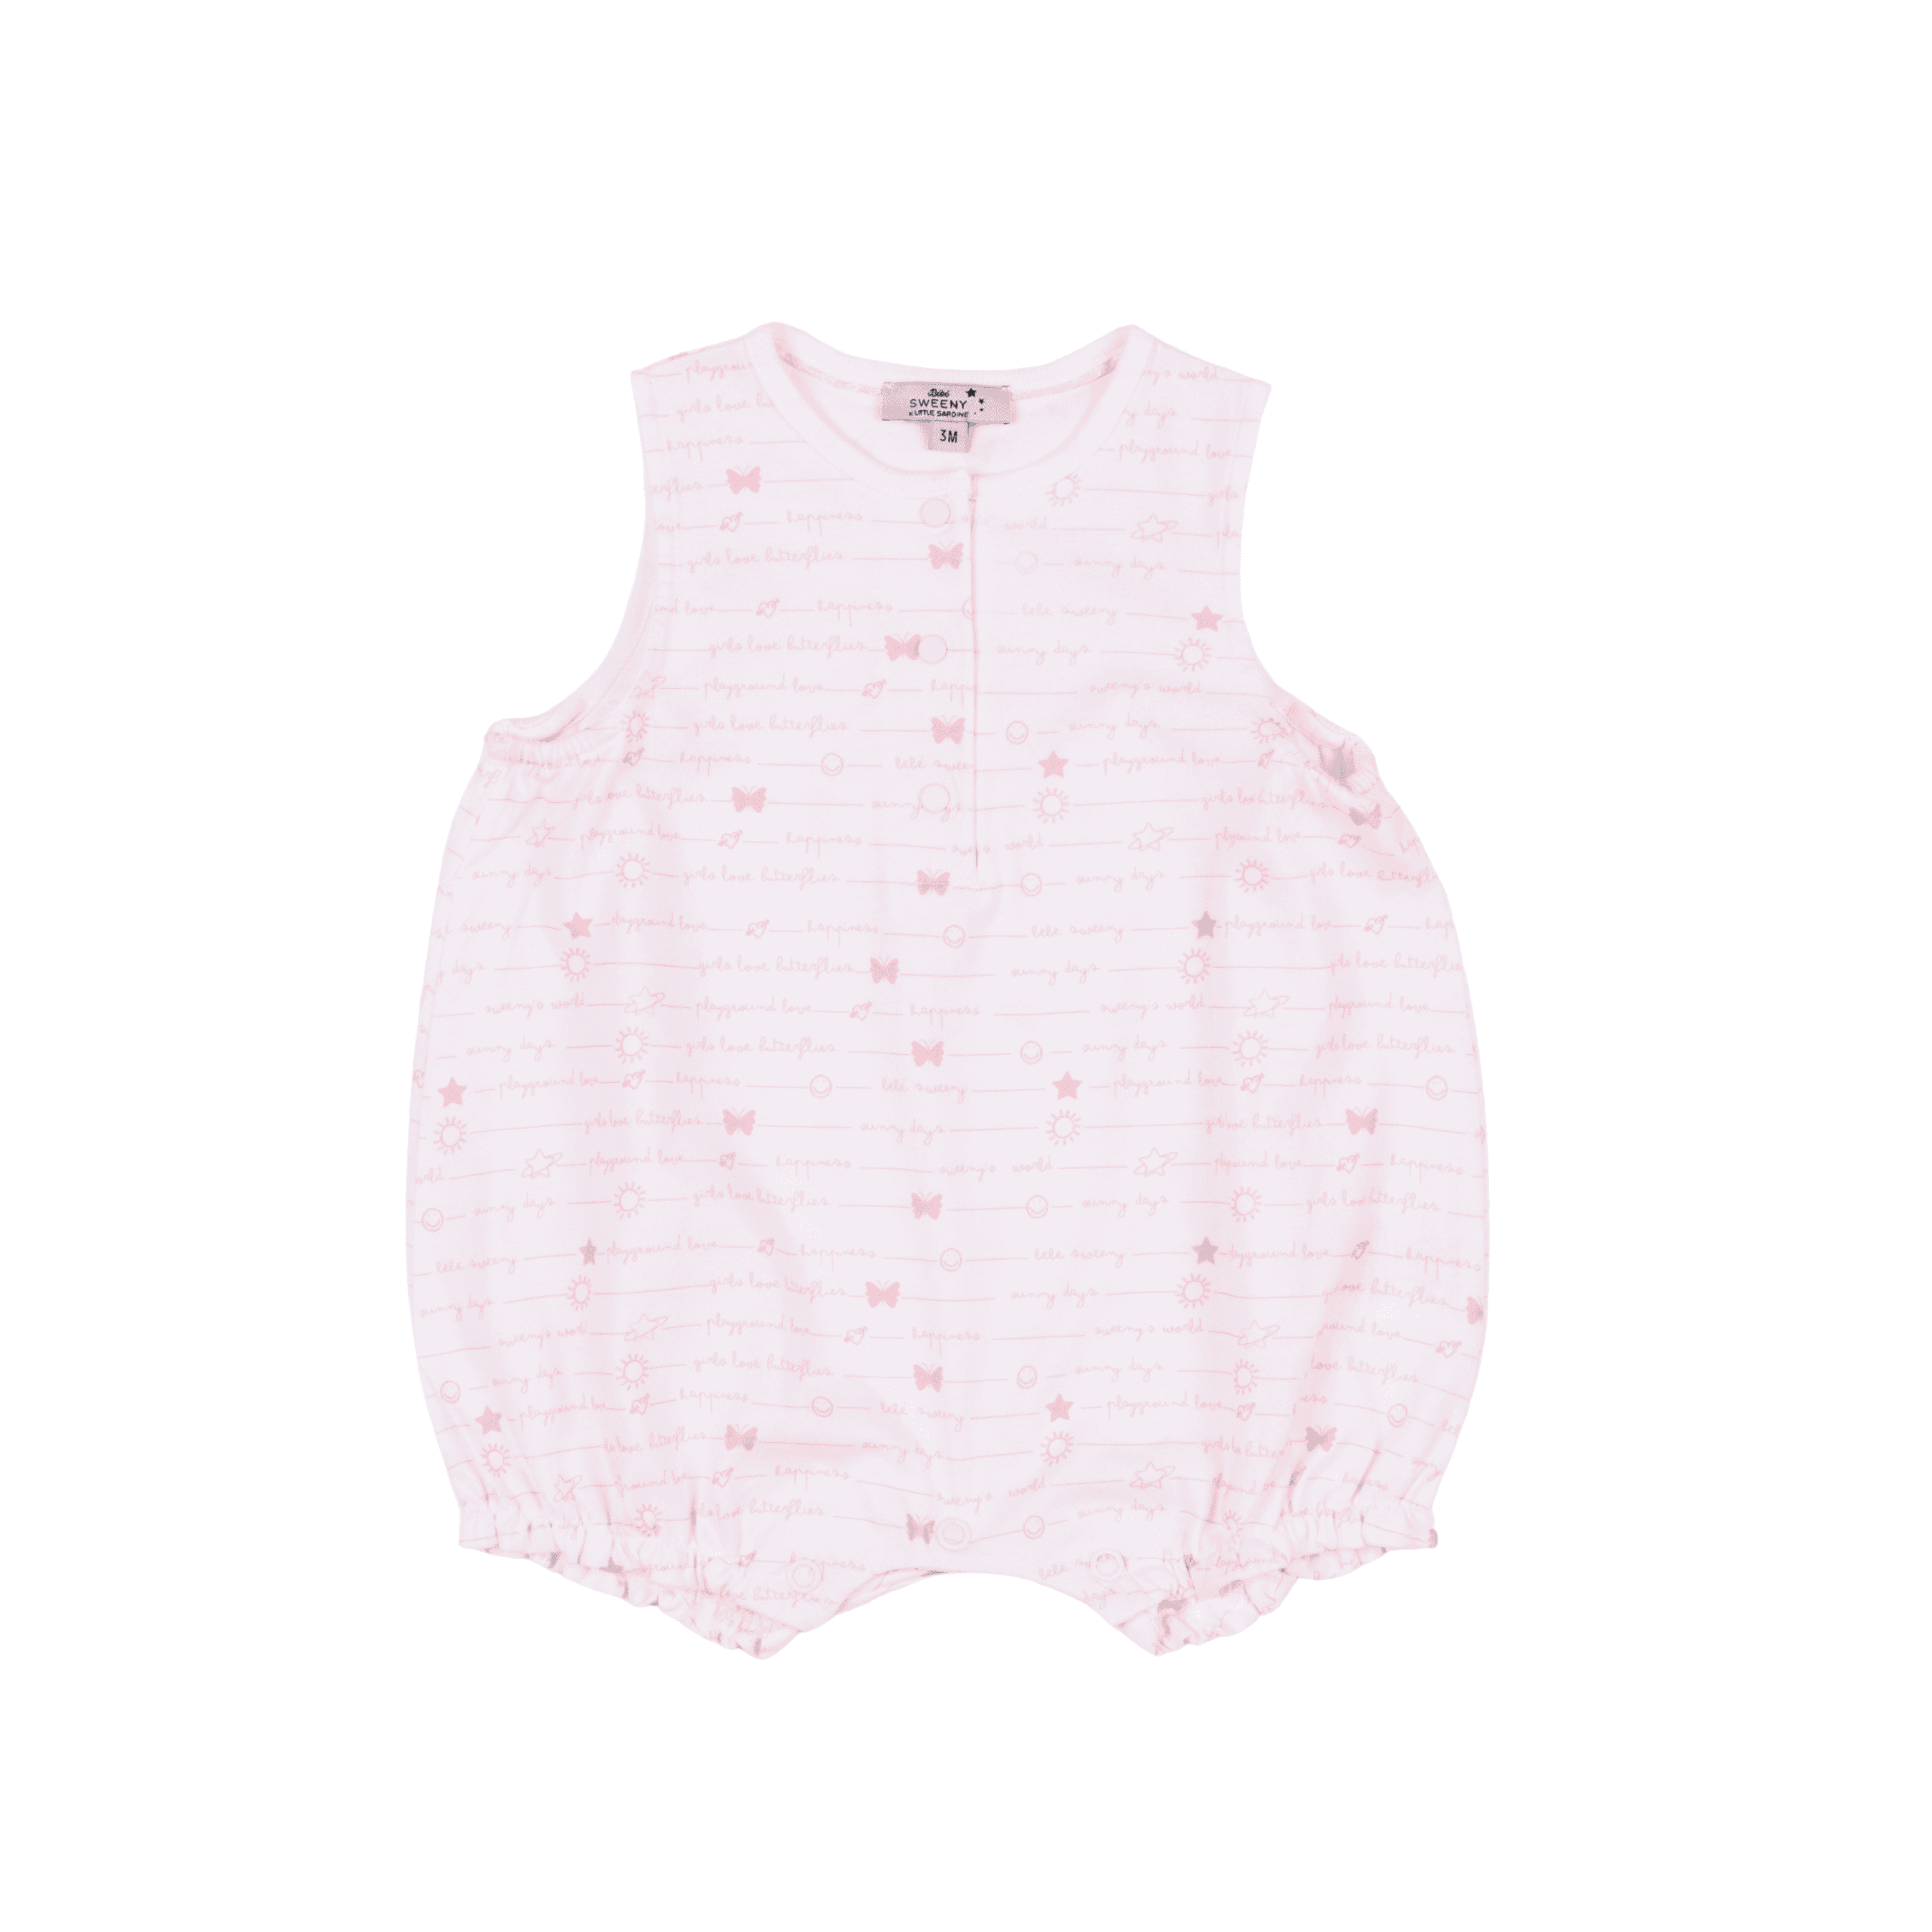 Baby Girls Pink Organic Cotton Playsuit